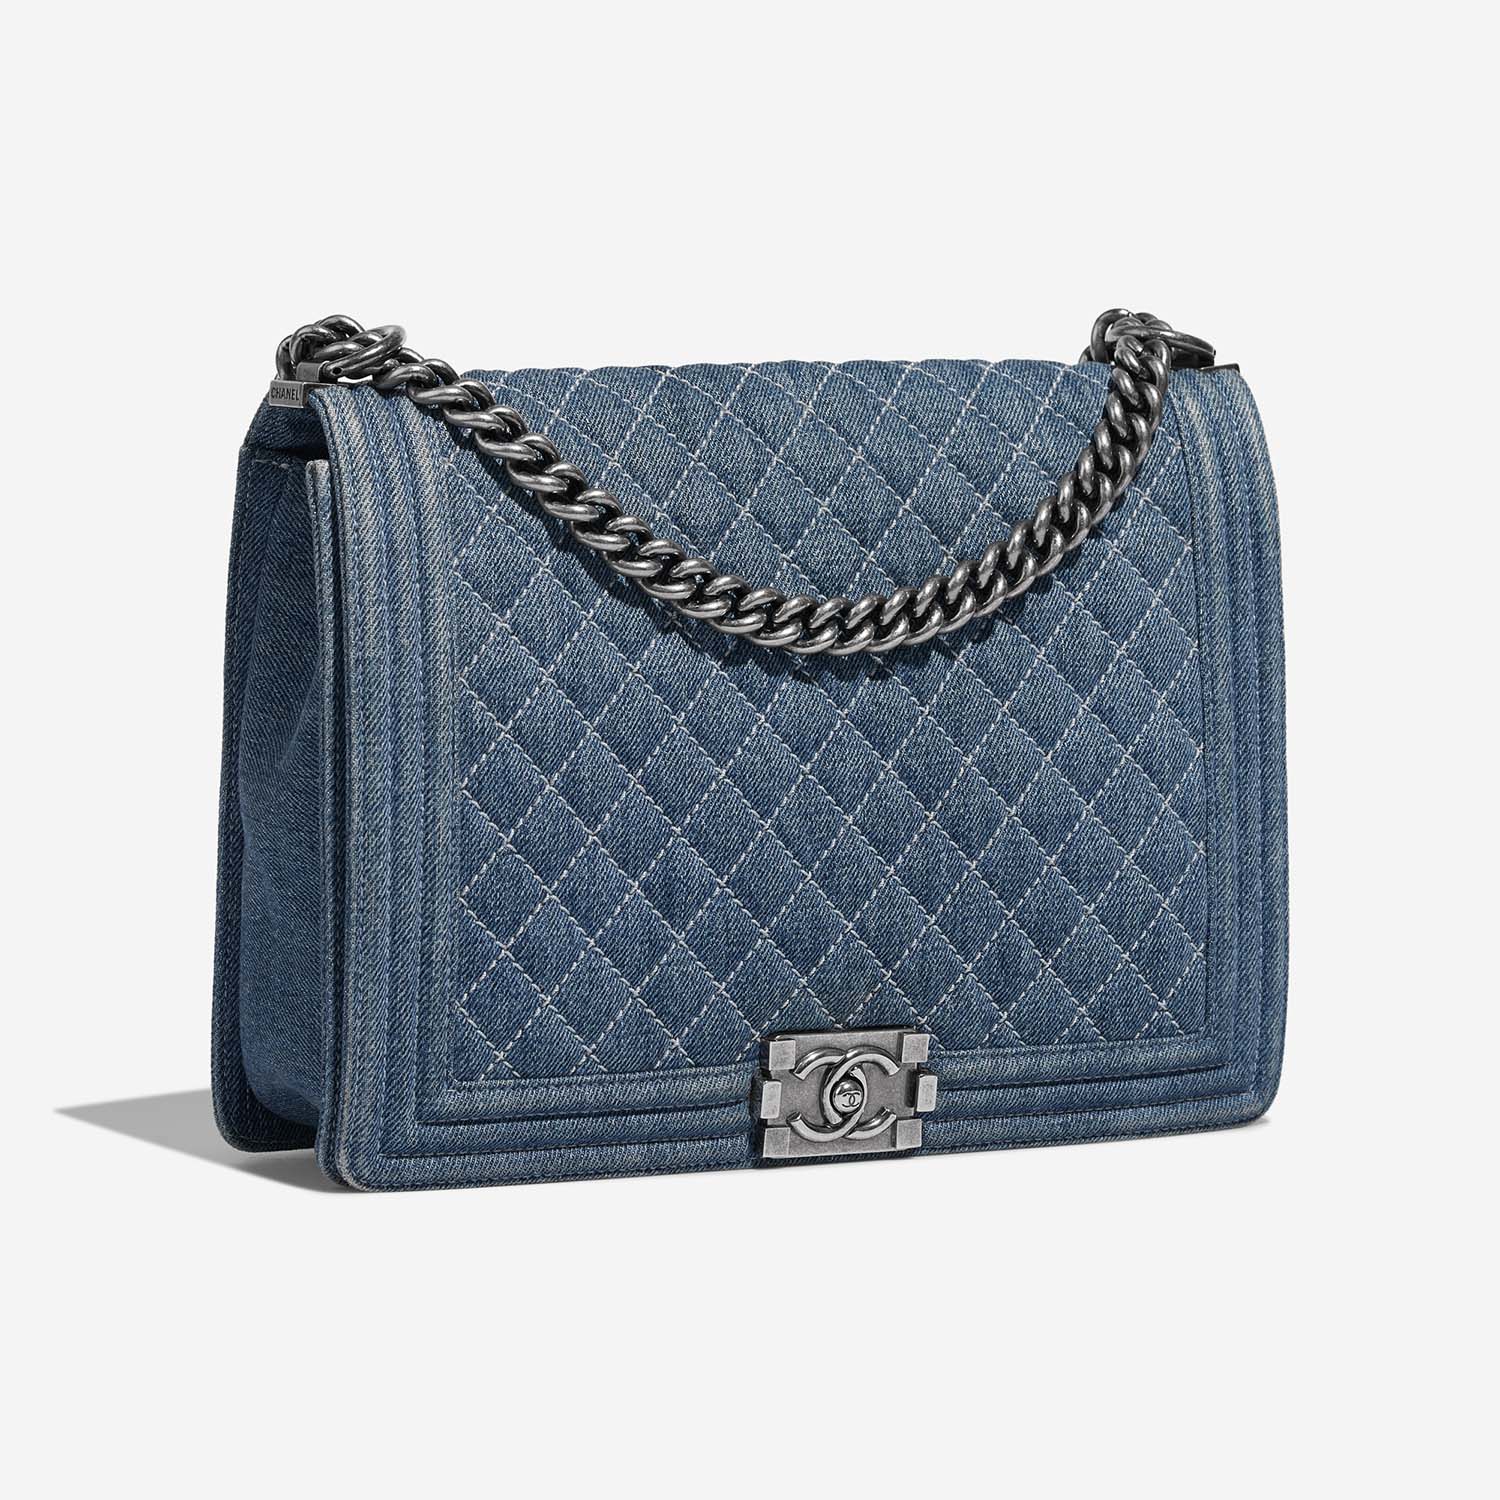 Chanel Boy Large Blue Side Front | Verkaufen Sie Ihre Designer-Tasche auf Saclab.com